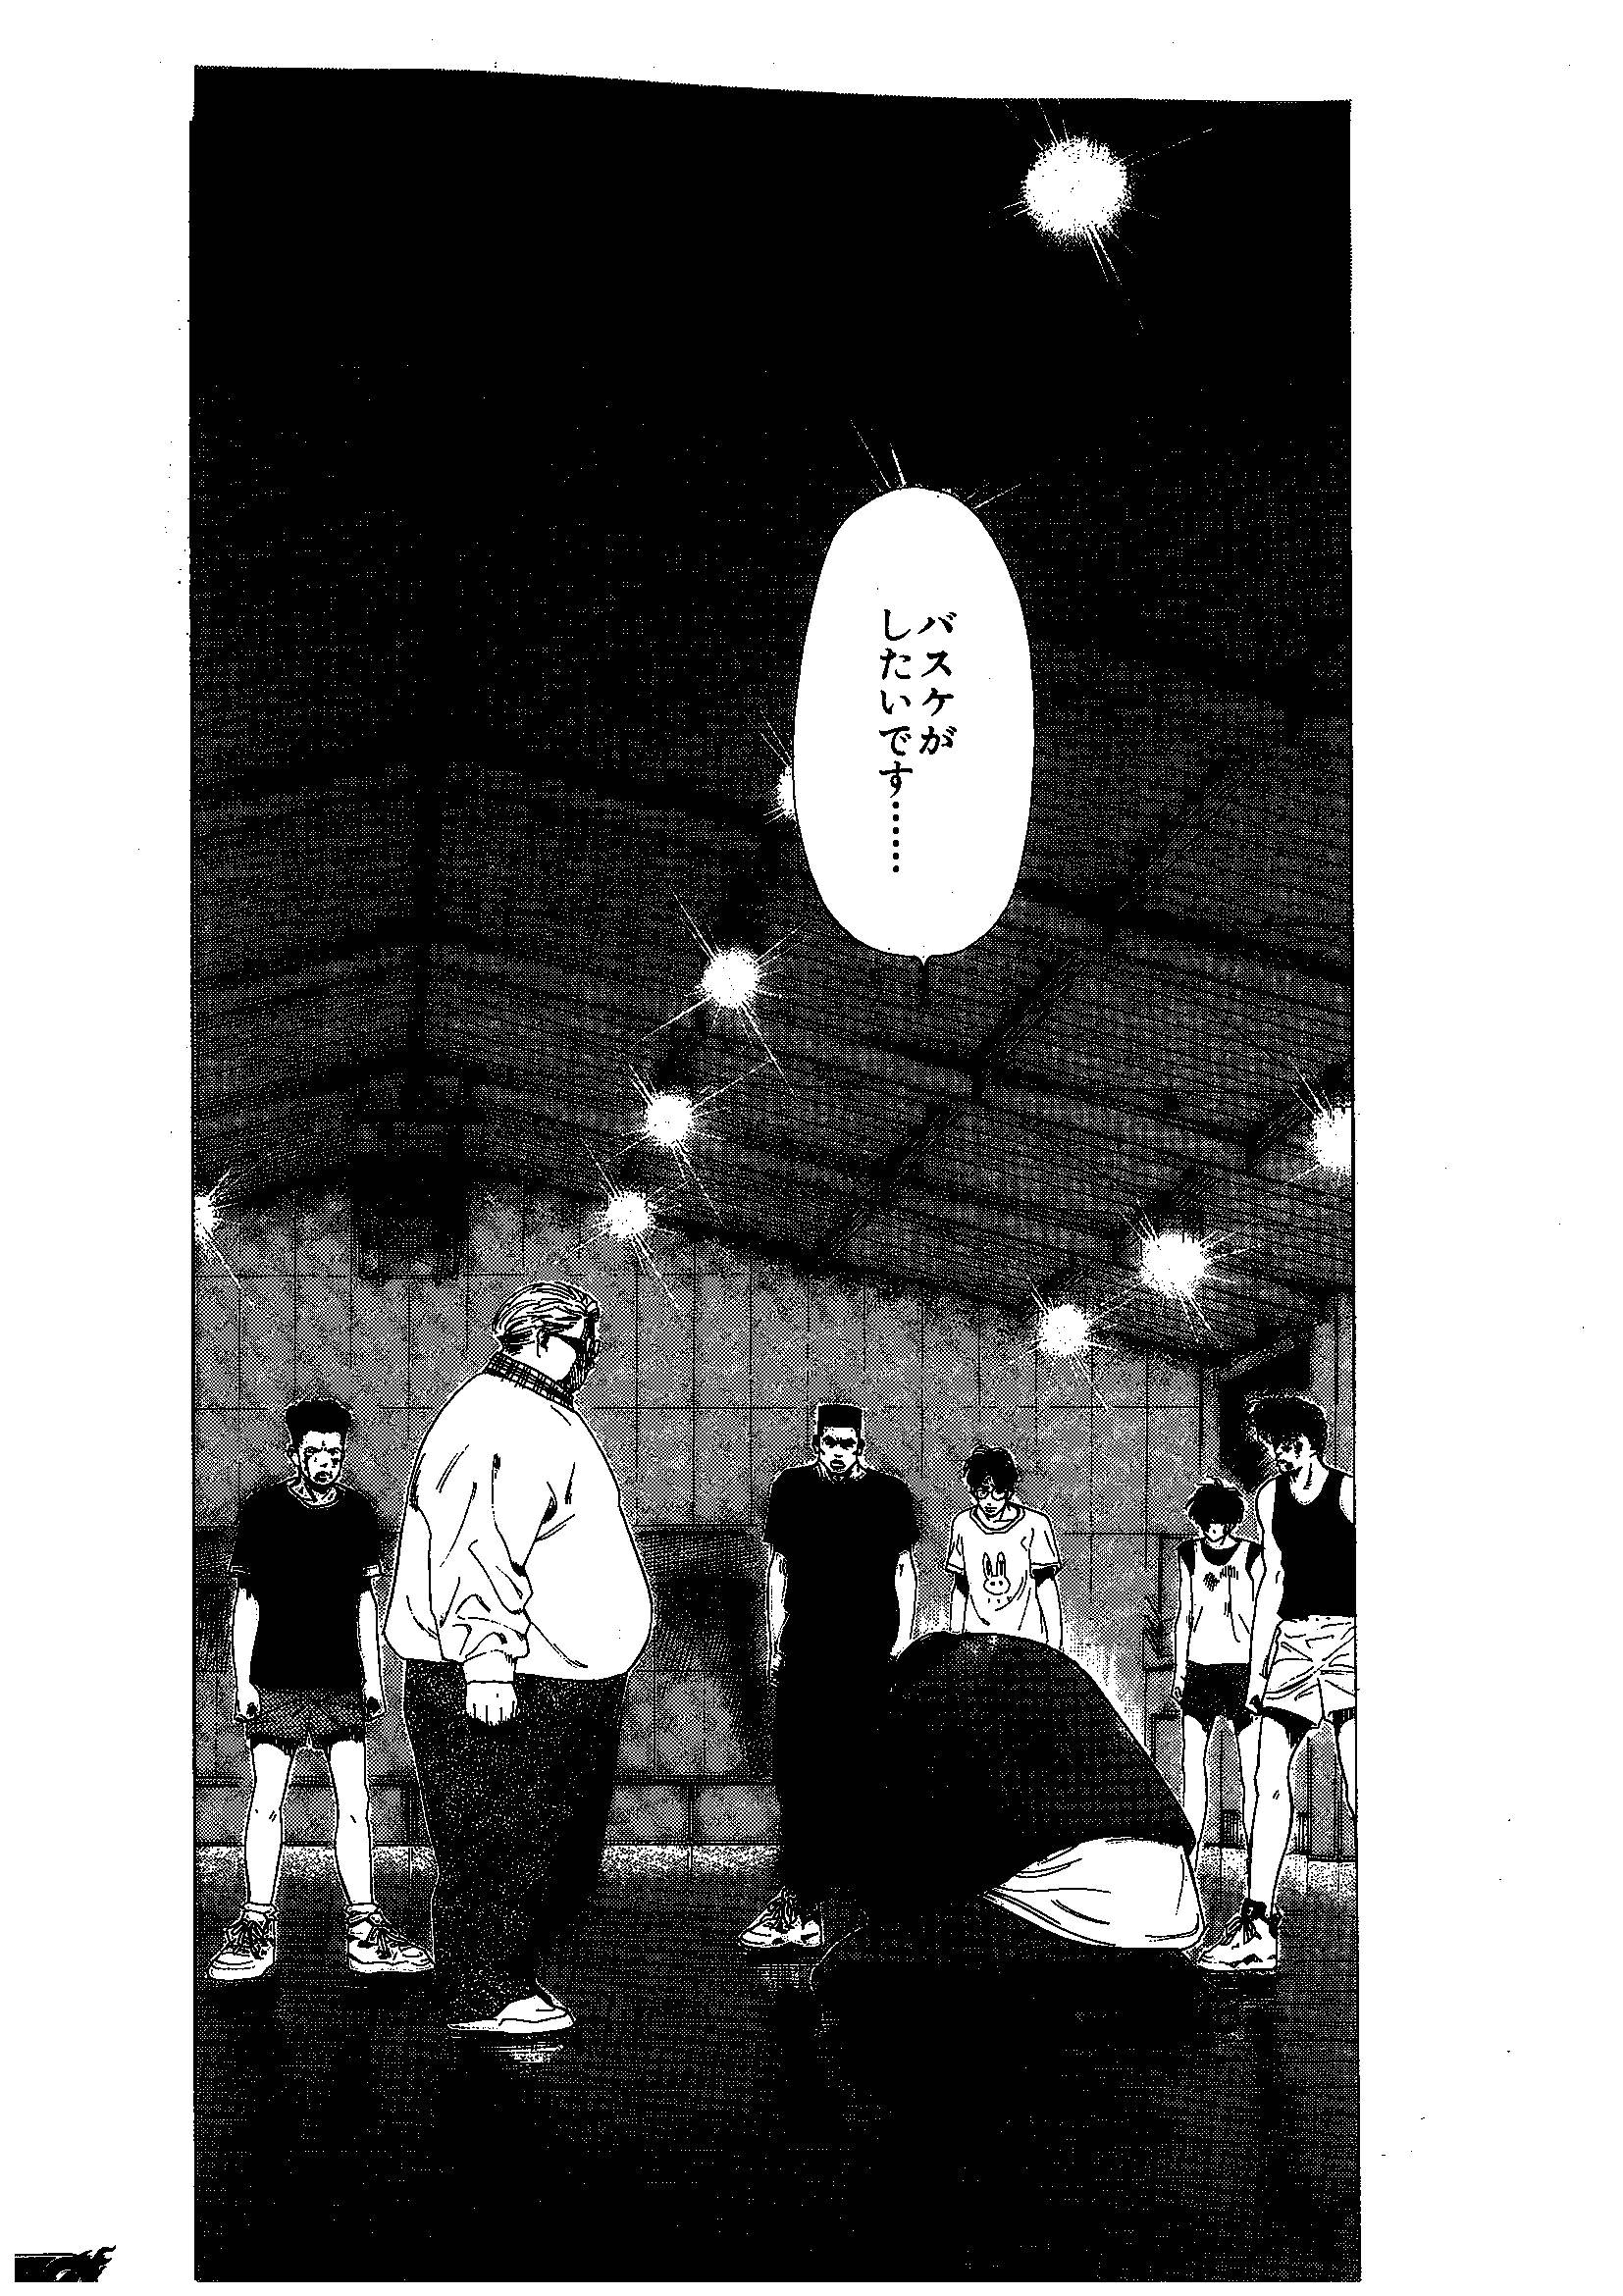 籃球漫畫 湘北隊員三井壽向安西教練跪地，講「教練，我想打籃球！」一幕，十分經典。